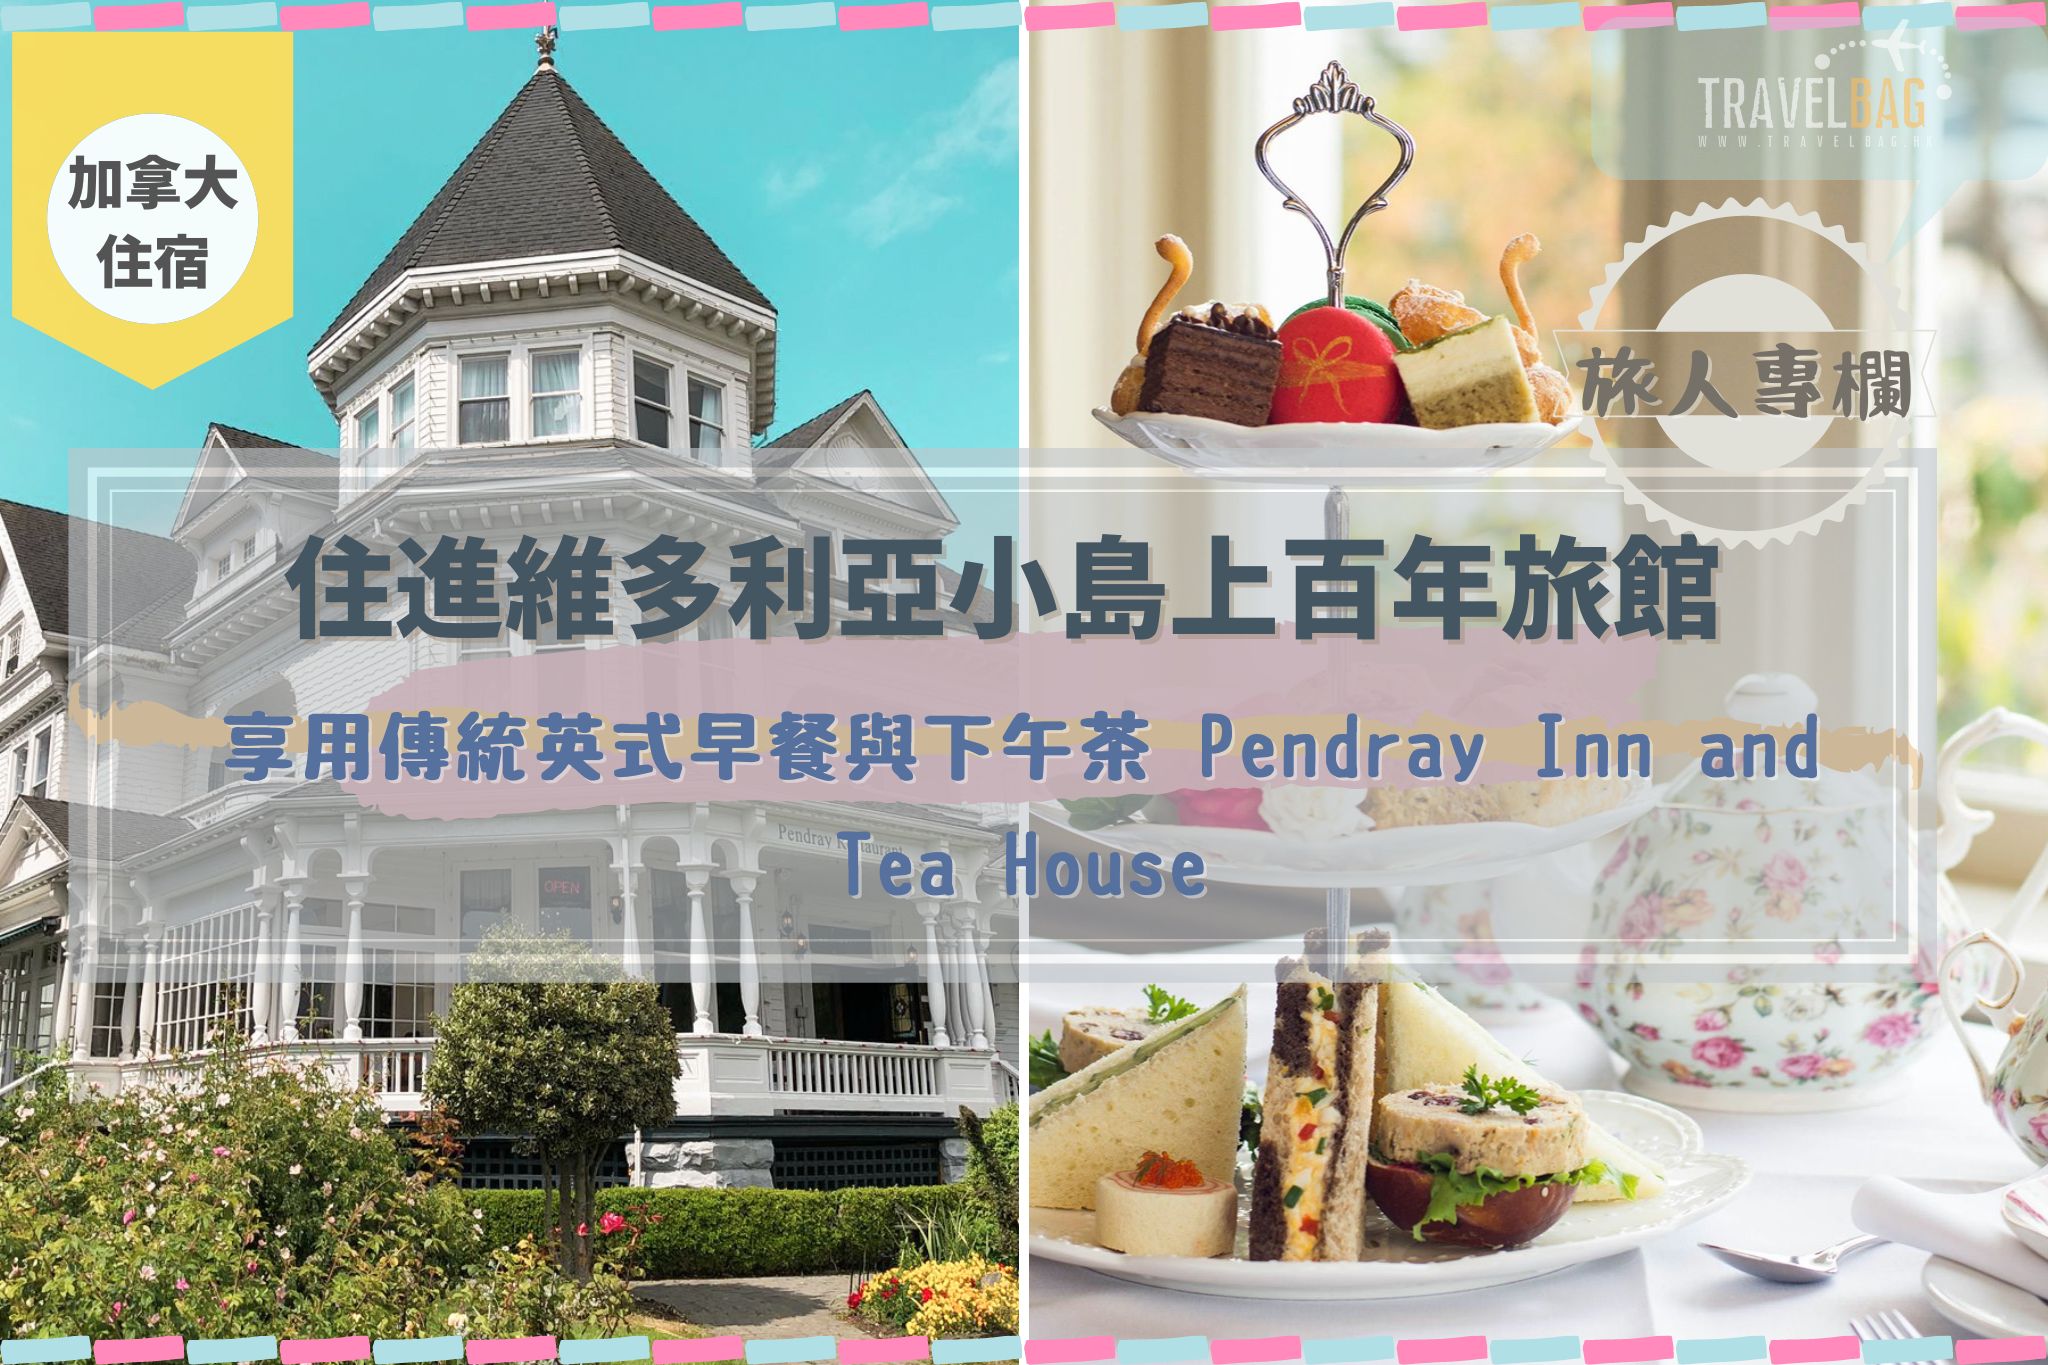 【加拿大】 住進維多利亞小島上百年旅館 享用傳統英式早餐與下午茶 Pendray Inn and Tea House－旅人專欄